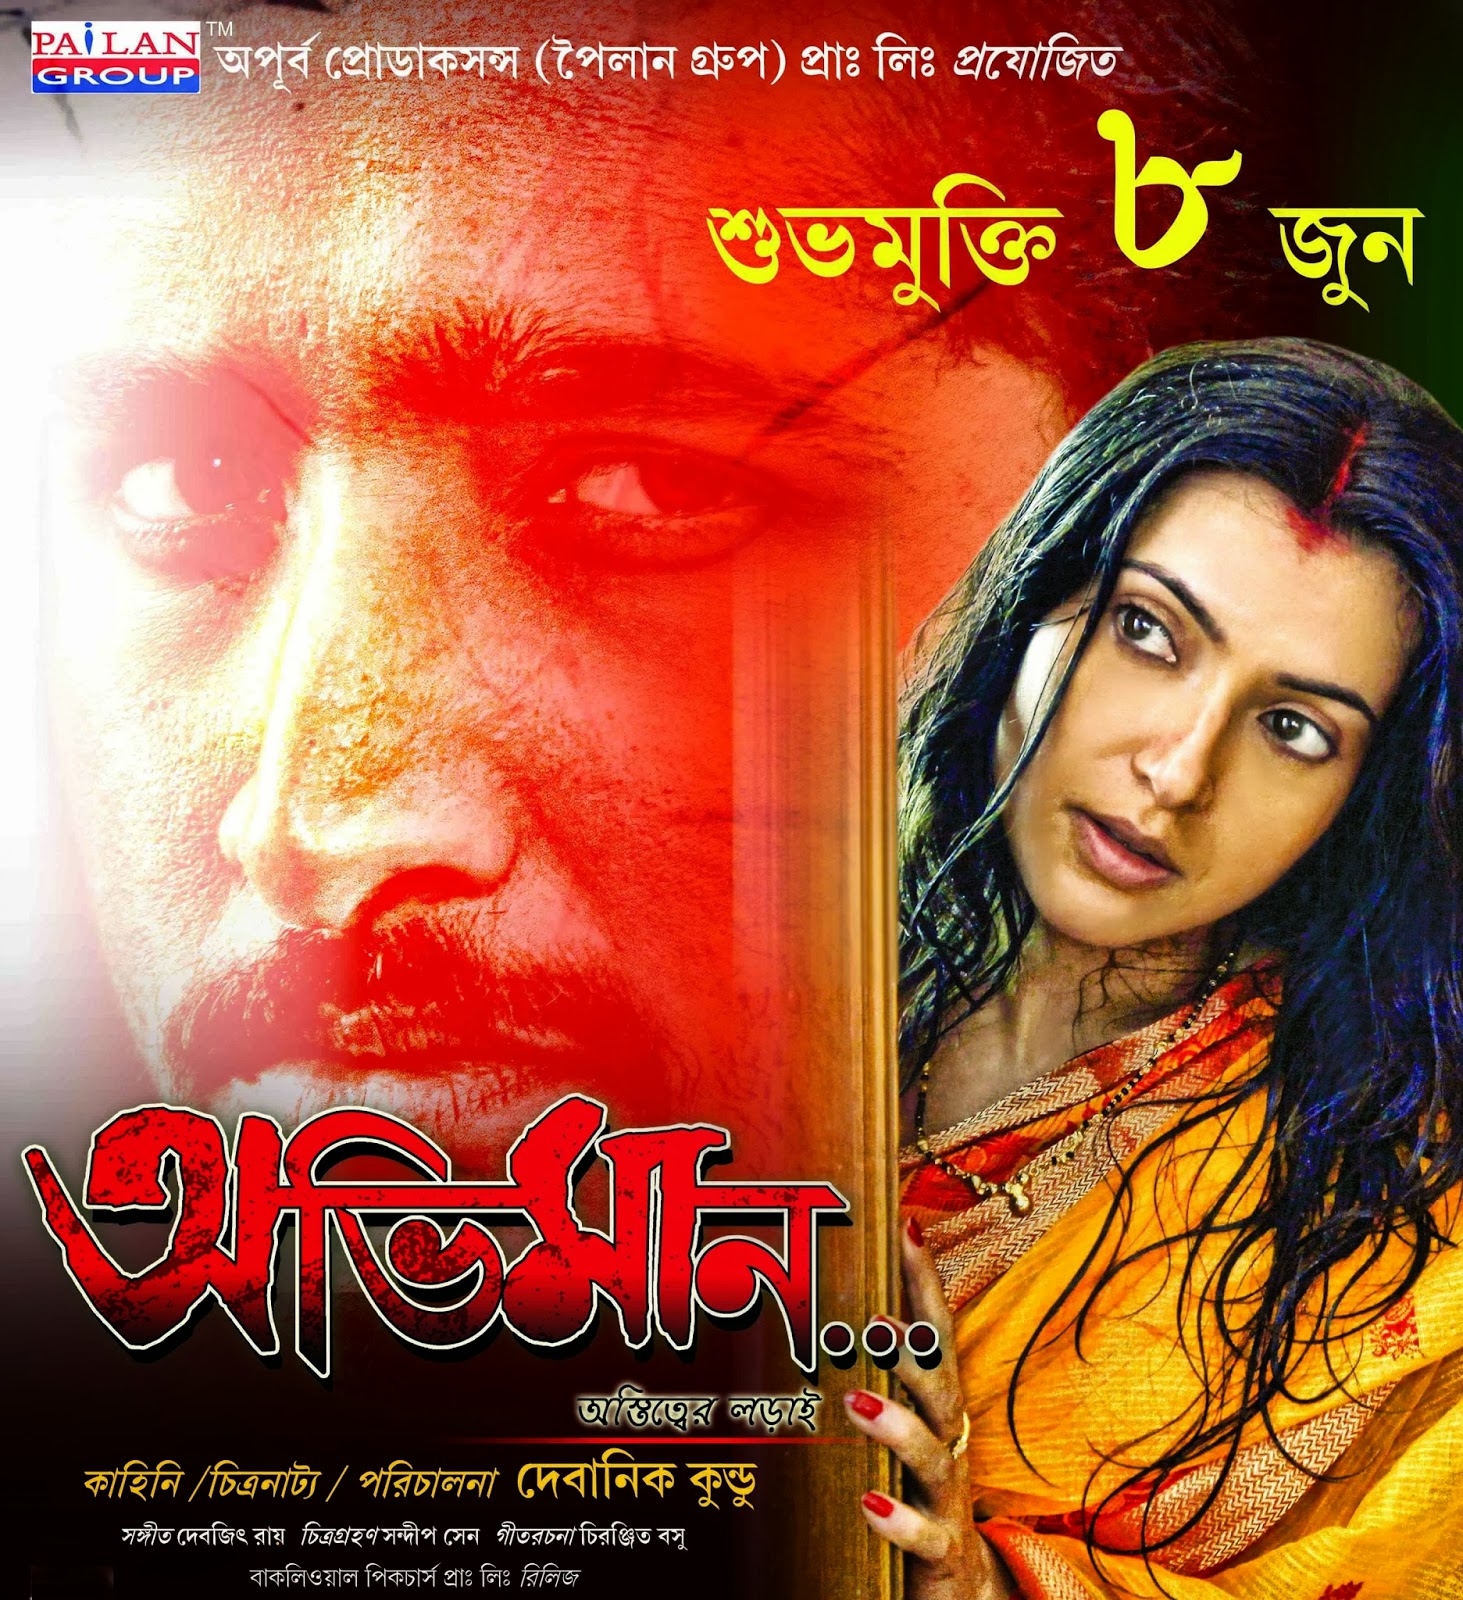 Bengali blue movie